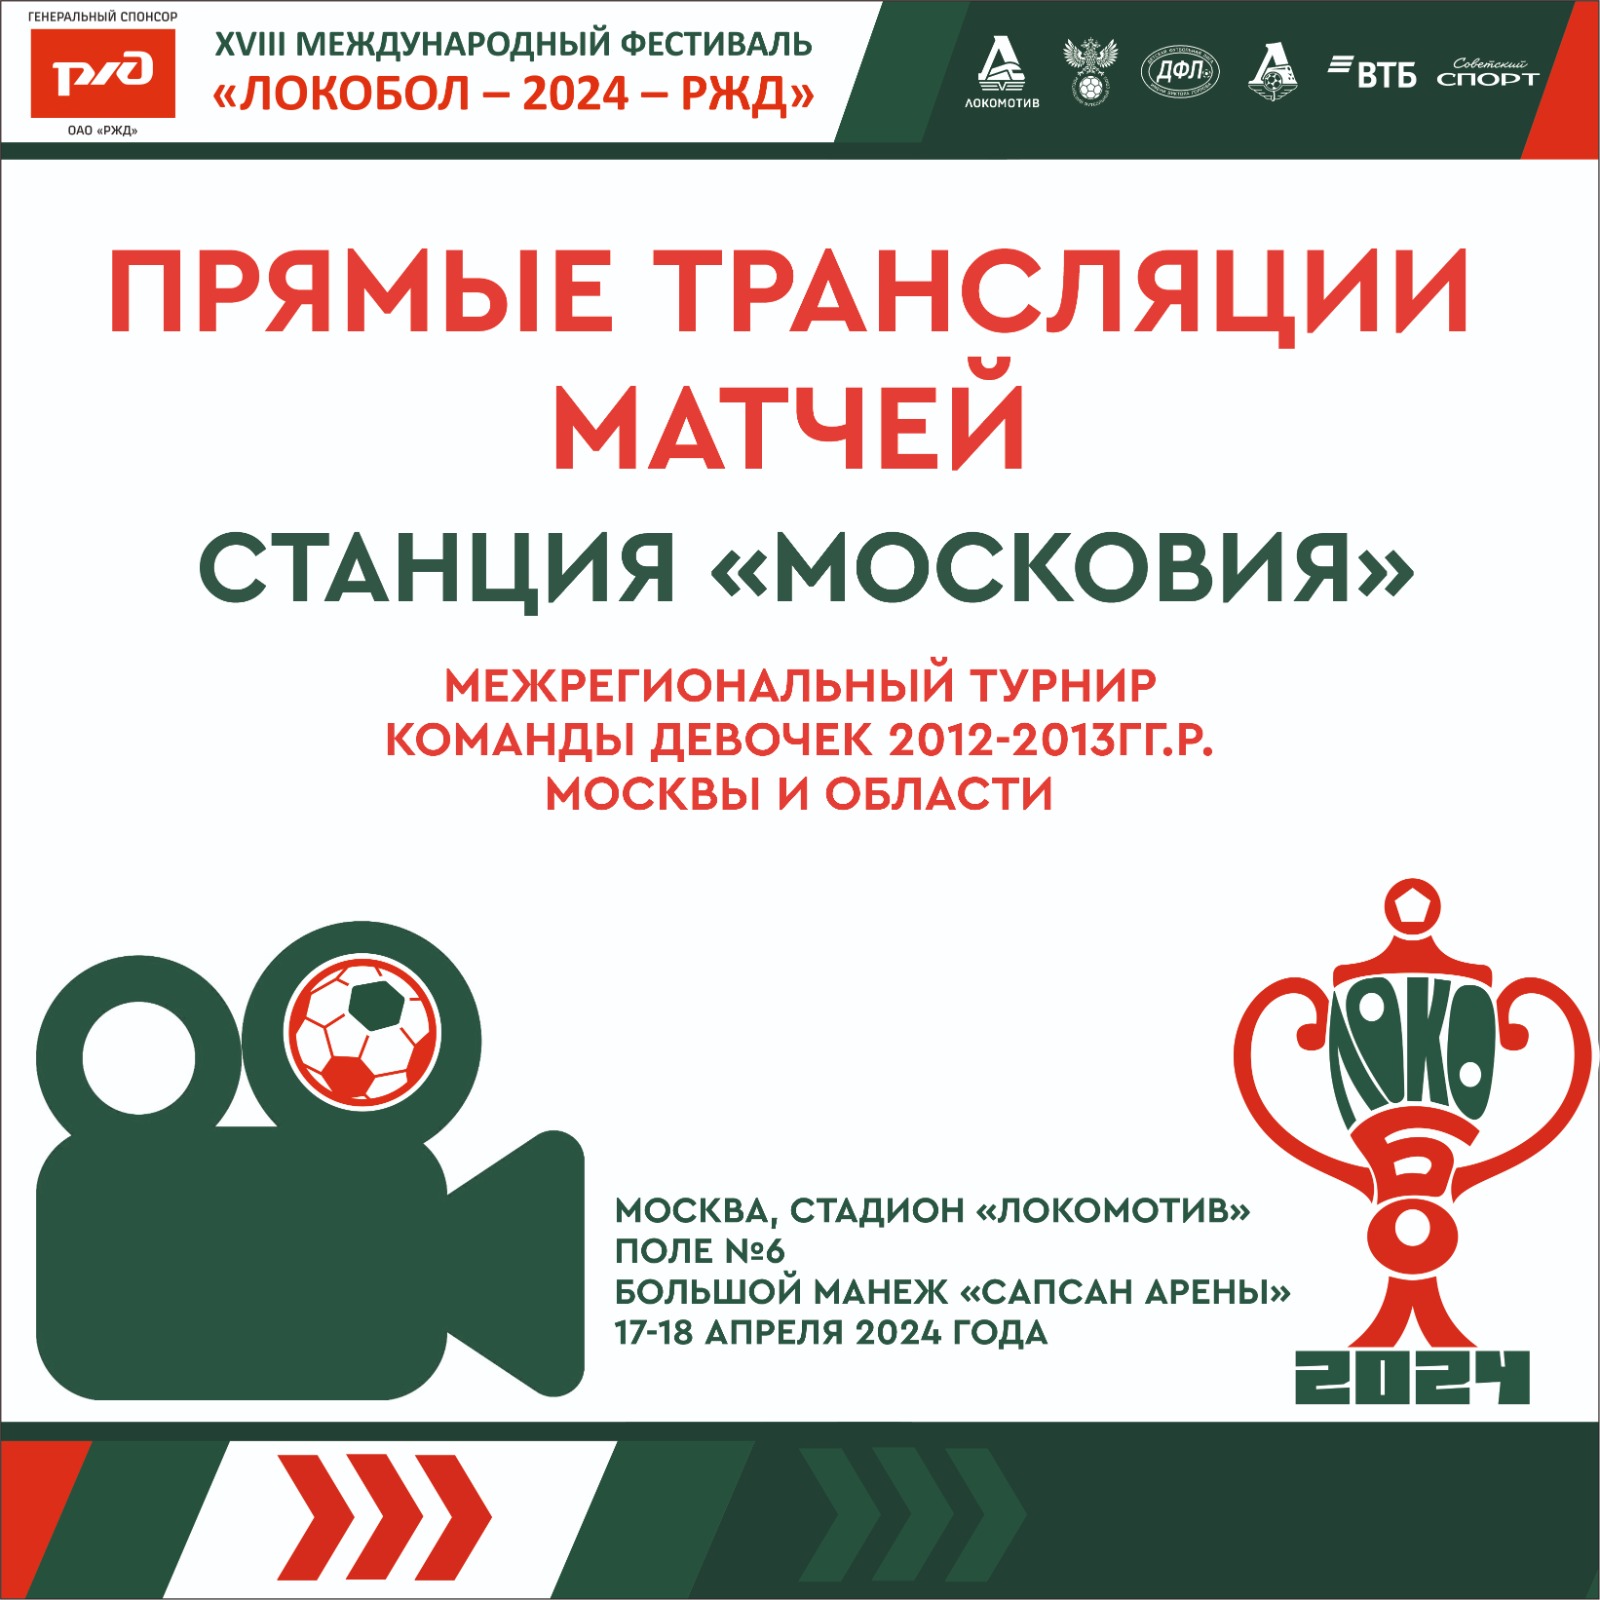 Смотрите игры межрегионального этапа среди команд девочек в Москве – в прямом эфире